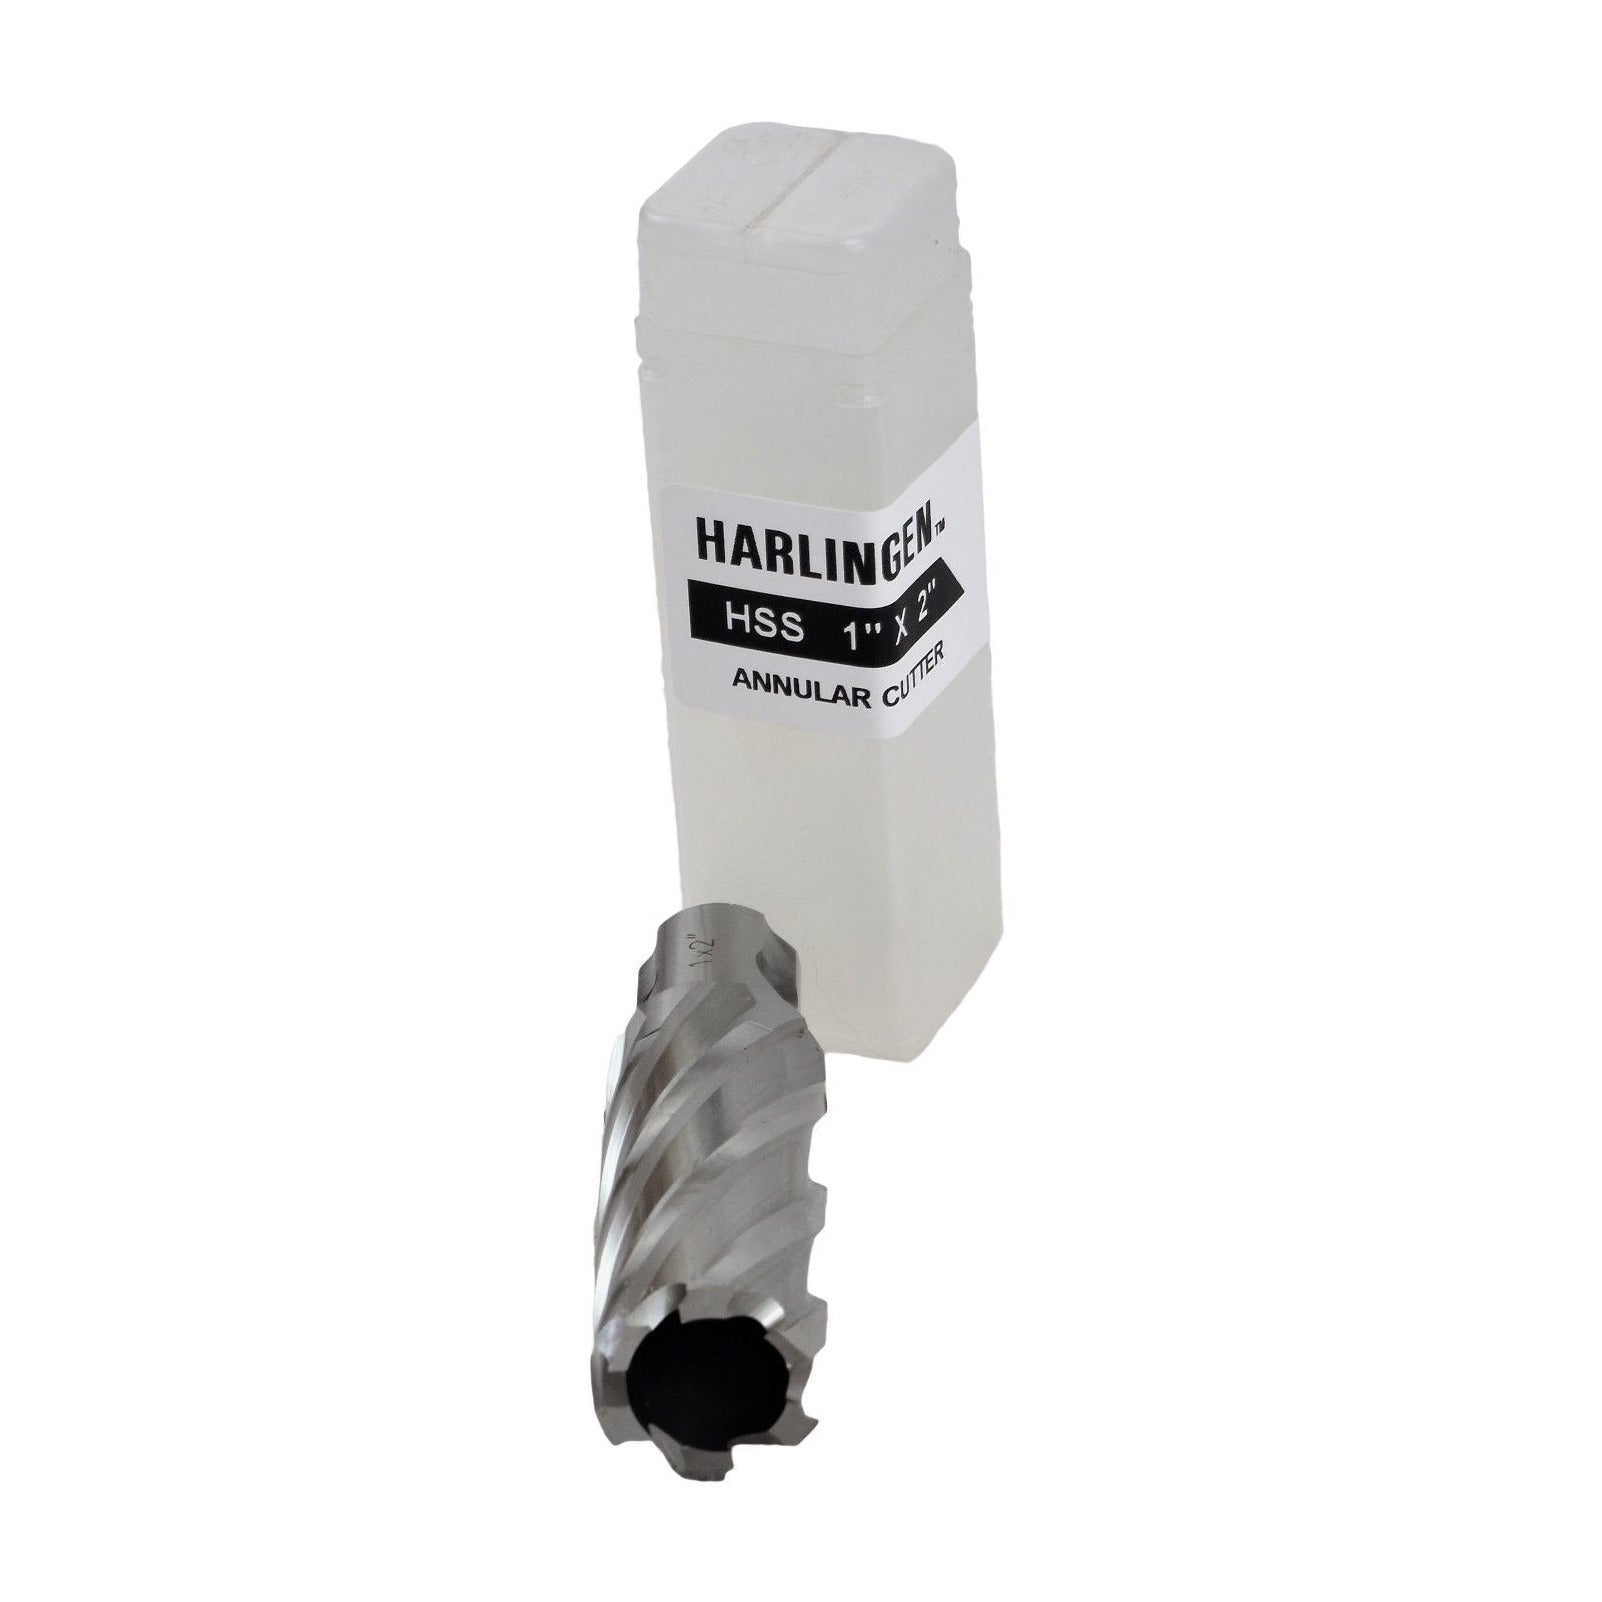 1"x2" HSS Annular Broach Cutter ; Magnetic Drill ; Rotabroach ; Universal Shank